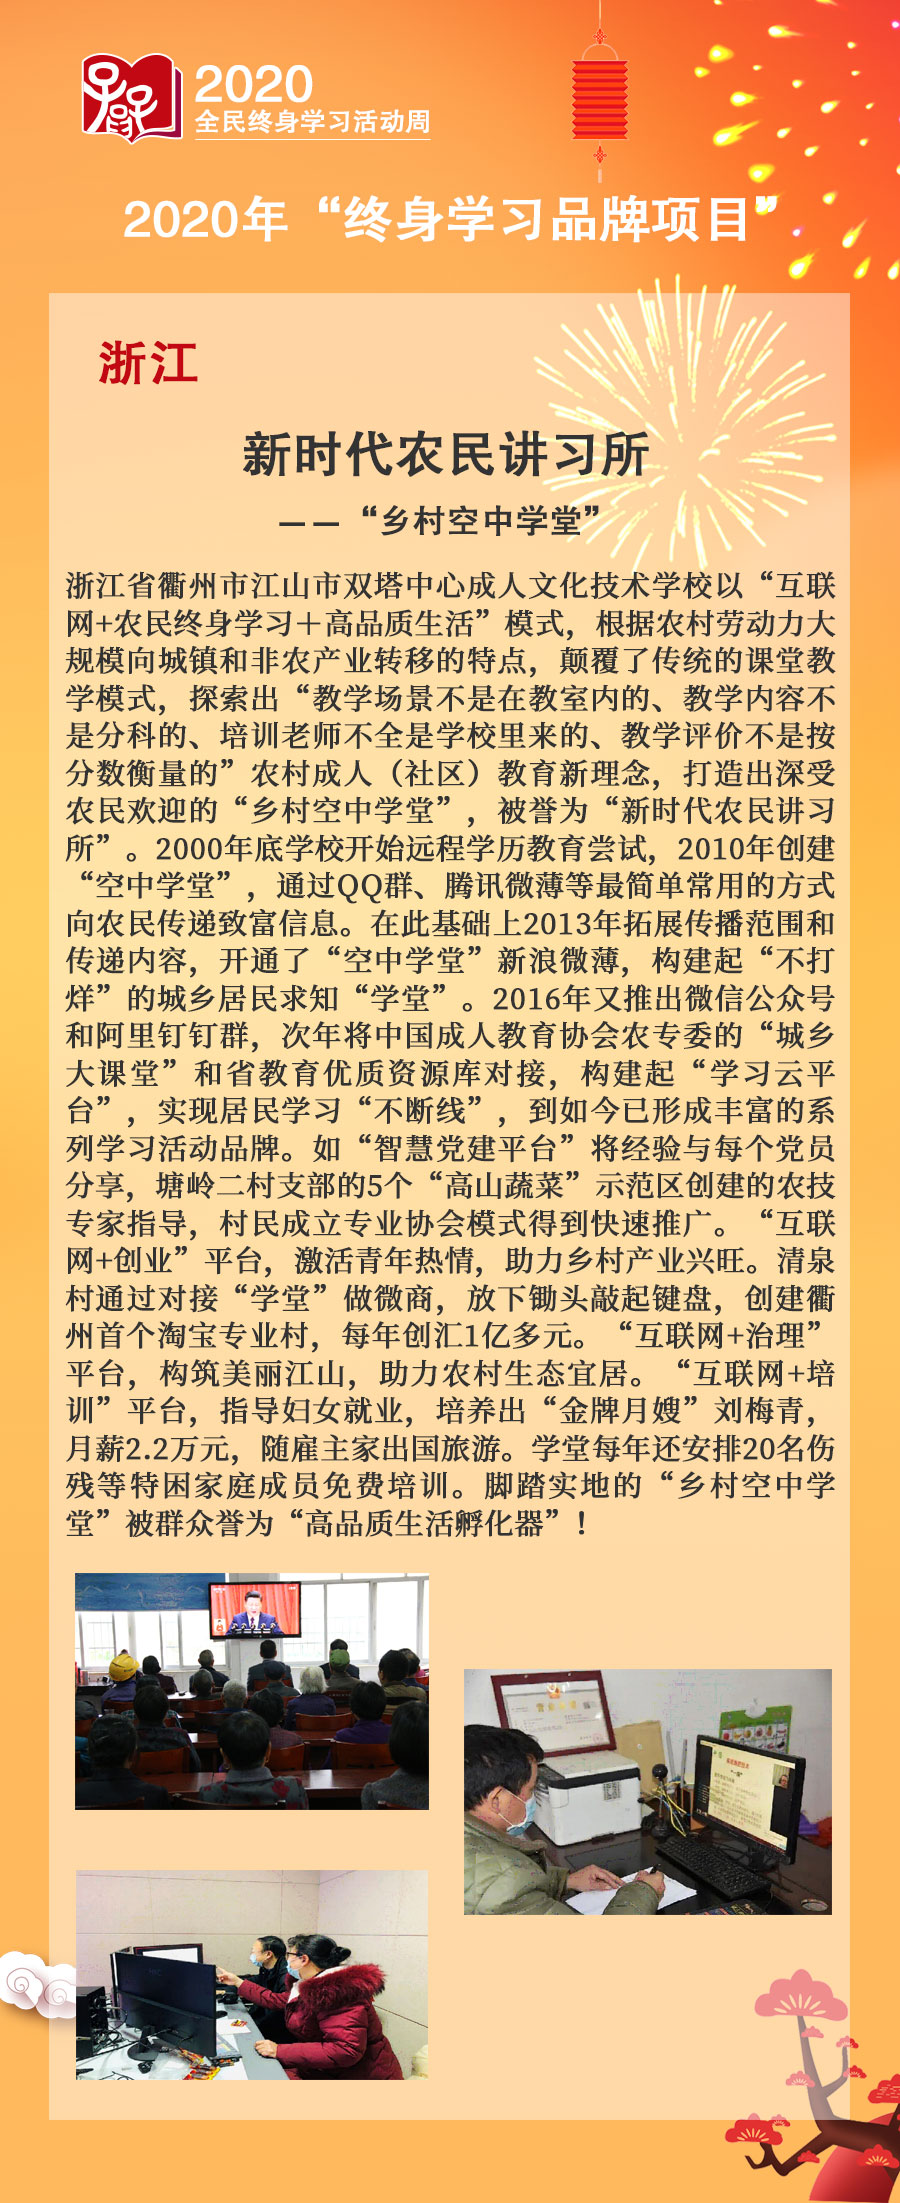 7.浙江省：新时代农民讲习所—“乡村空中学堂”.jpg